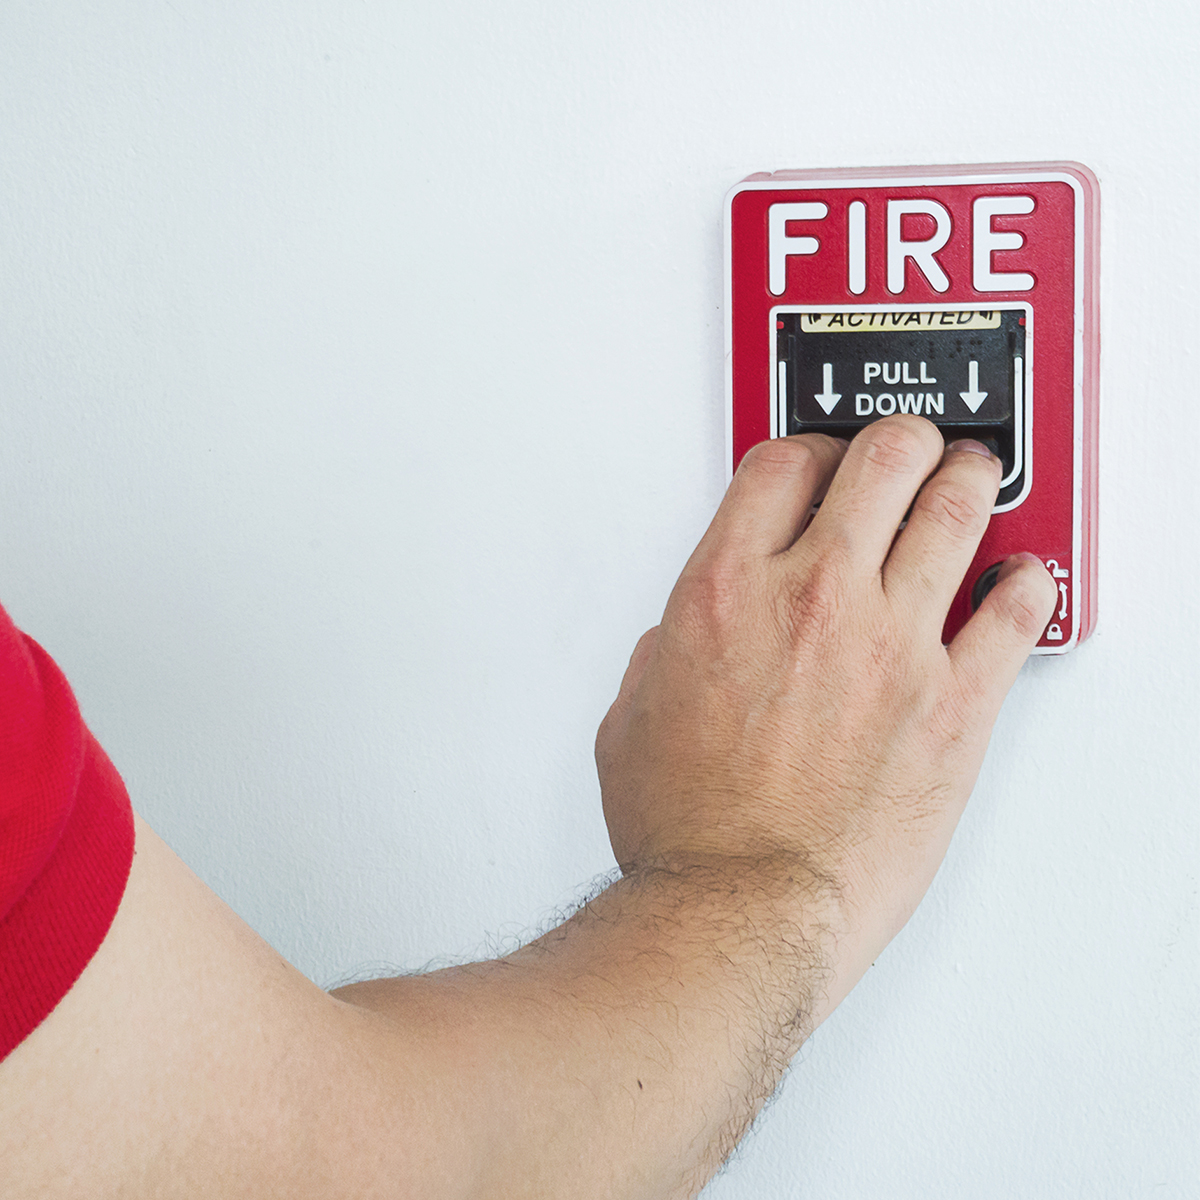 Alarme incendie, protégez vous contre les incendies